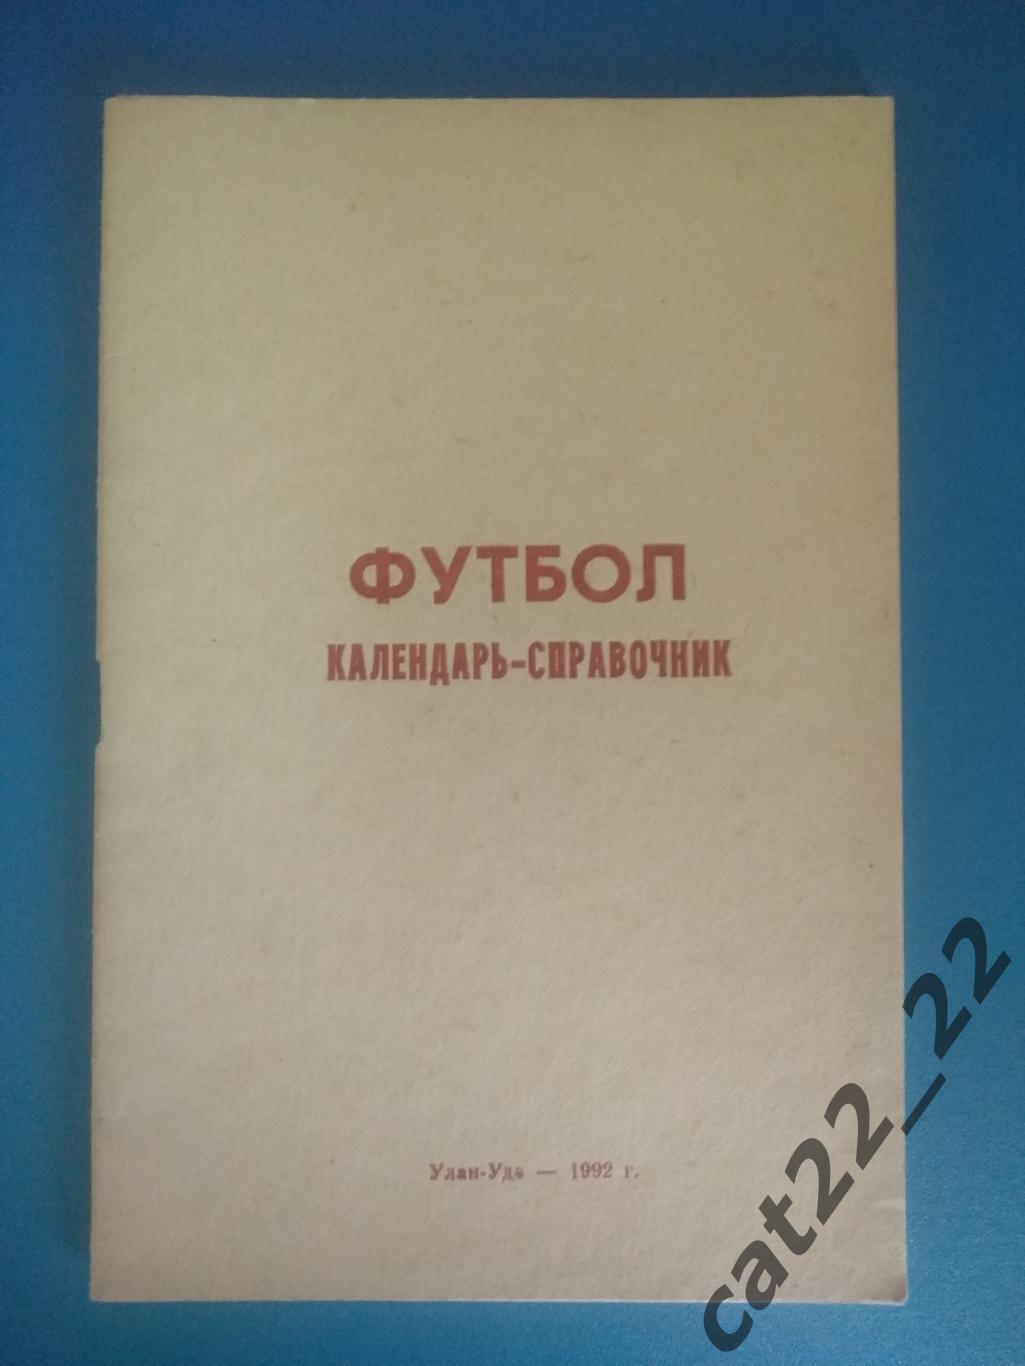 Календарь - справочник: Улан - Удэ Россия 1992